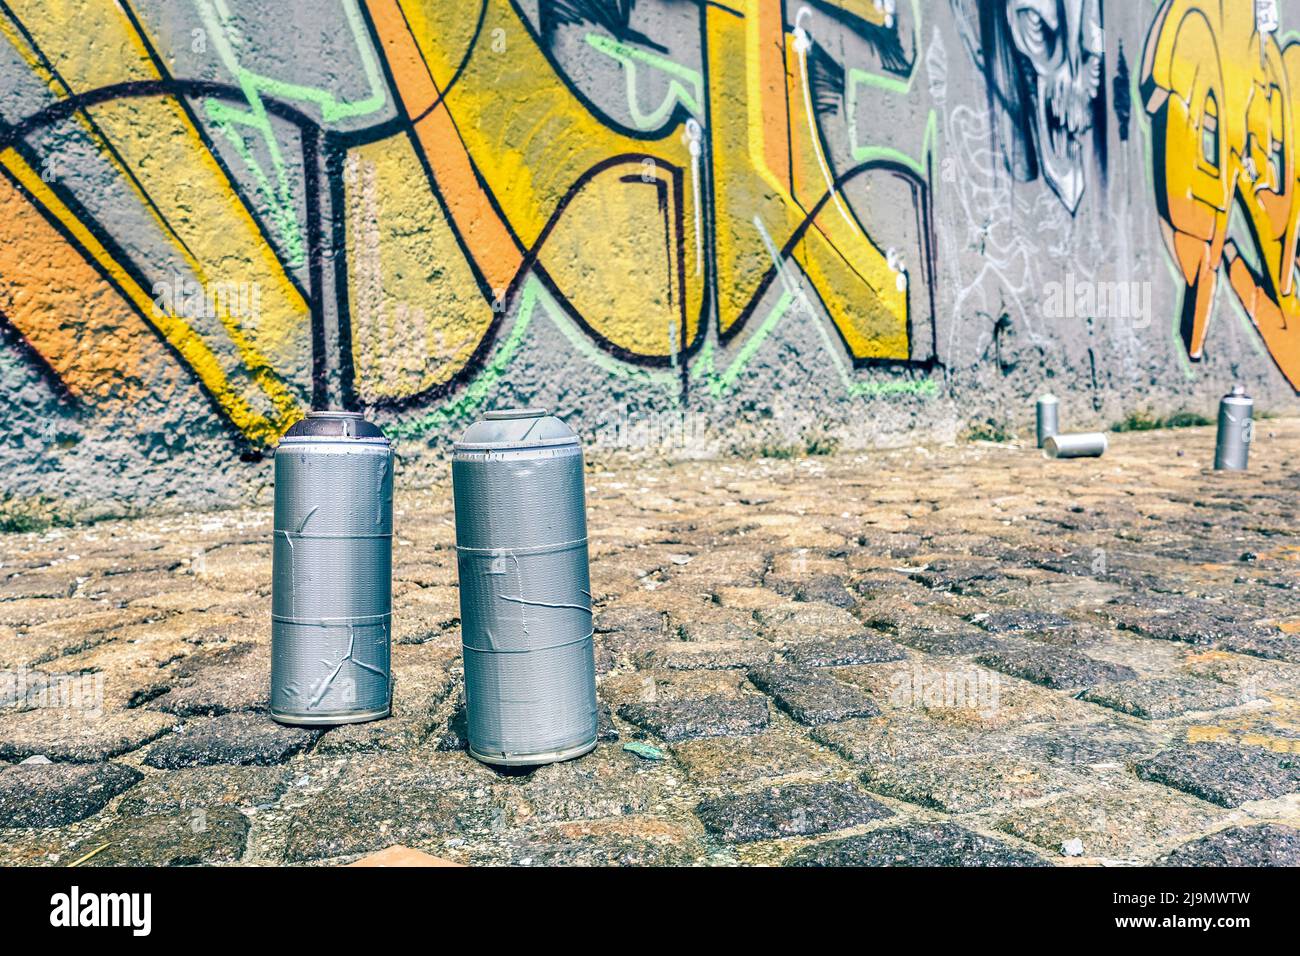 Detalle de aerosol en graffiti colorido en la pared - concepto moderno de arte urbano con la pintura urbana realizar y murales preparación en vivo - brillante Foto de stock